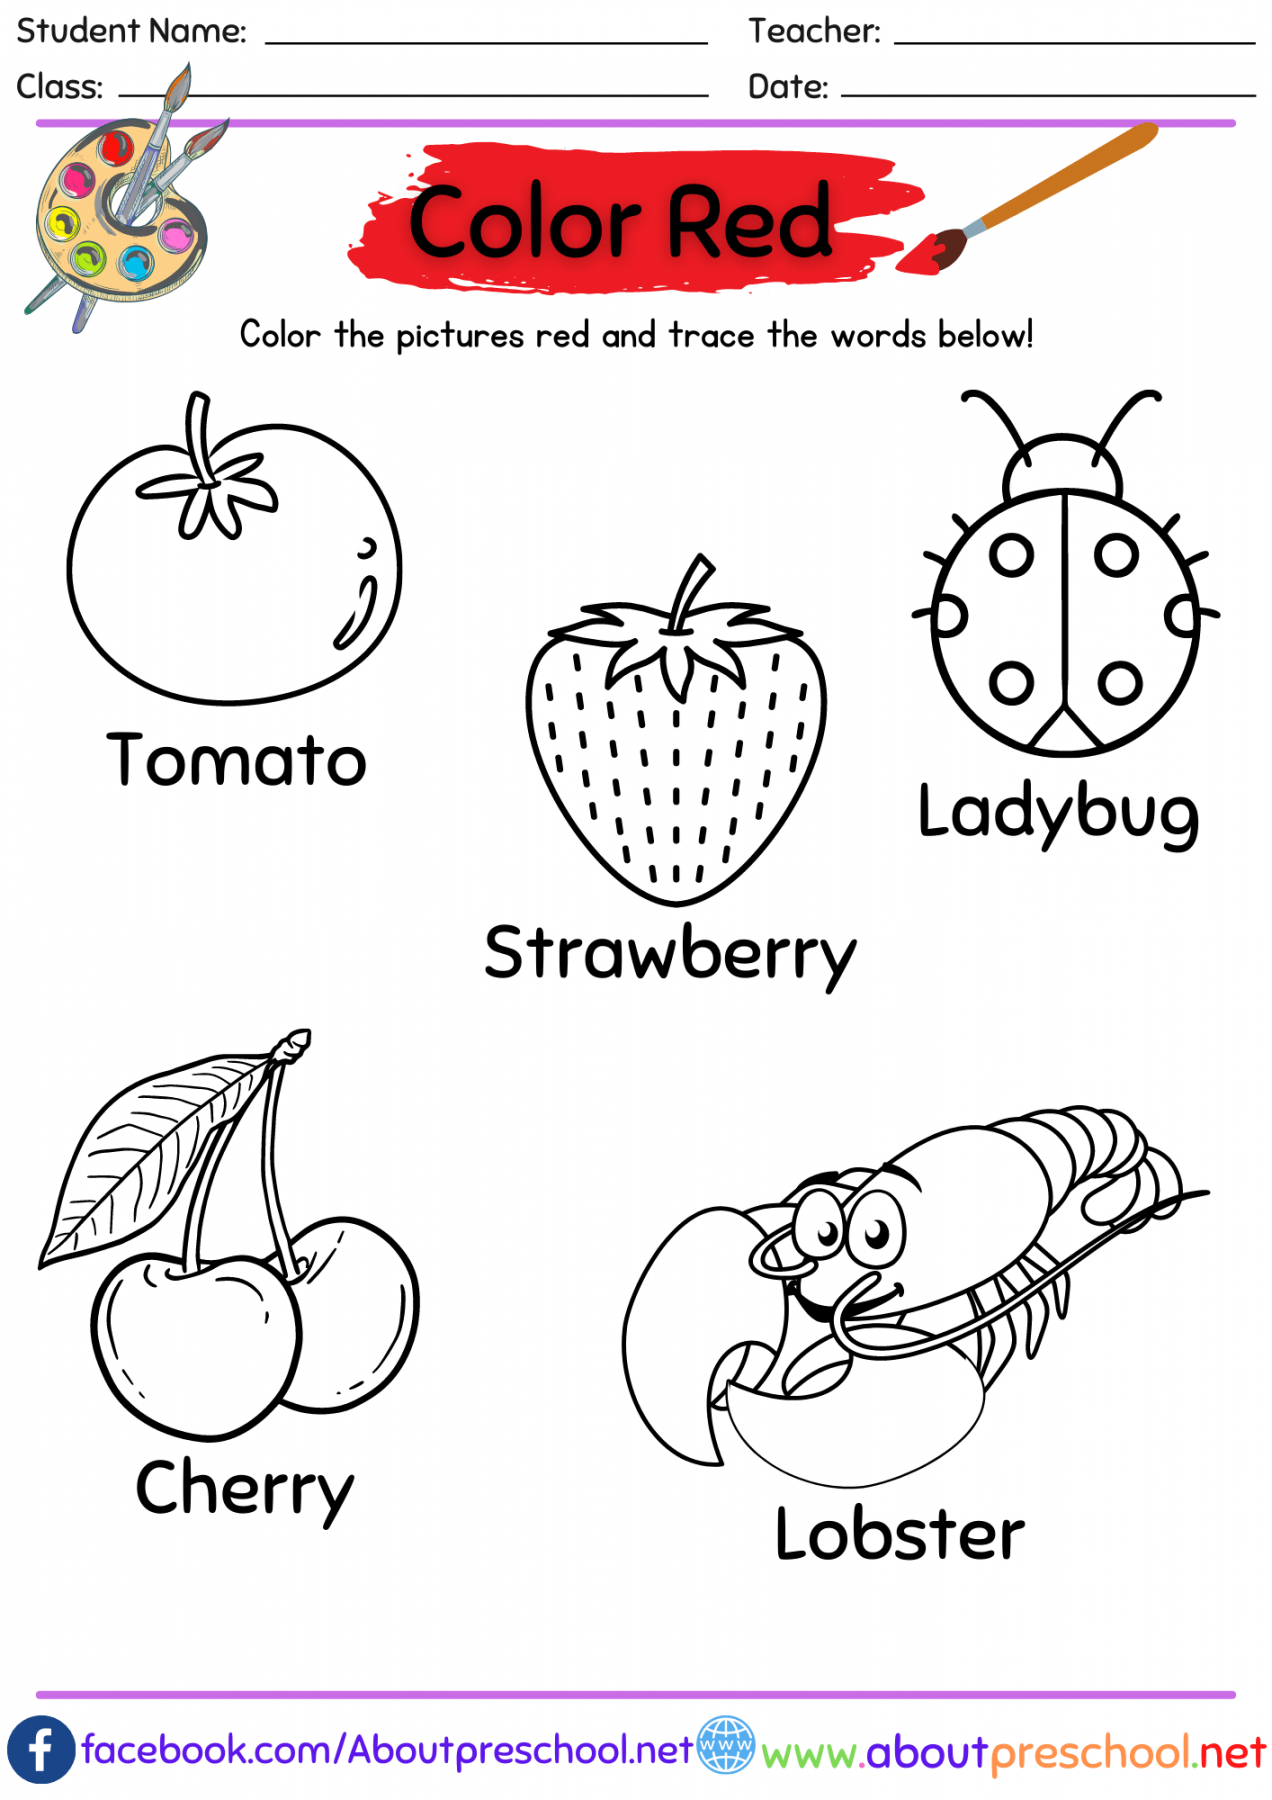 Color worksheets for Kindergarten Archives - About Preschool